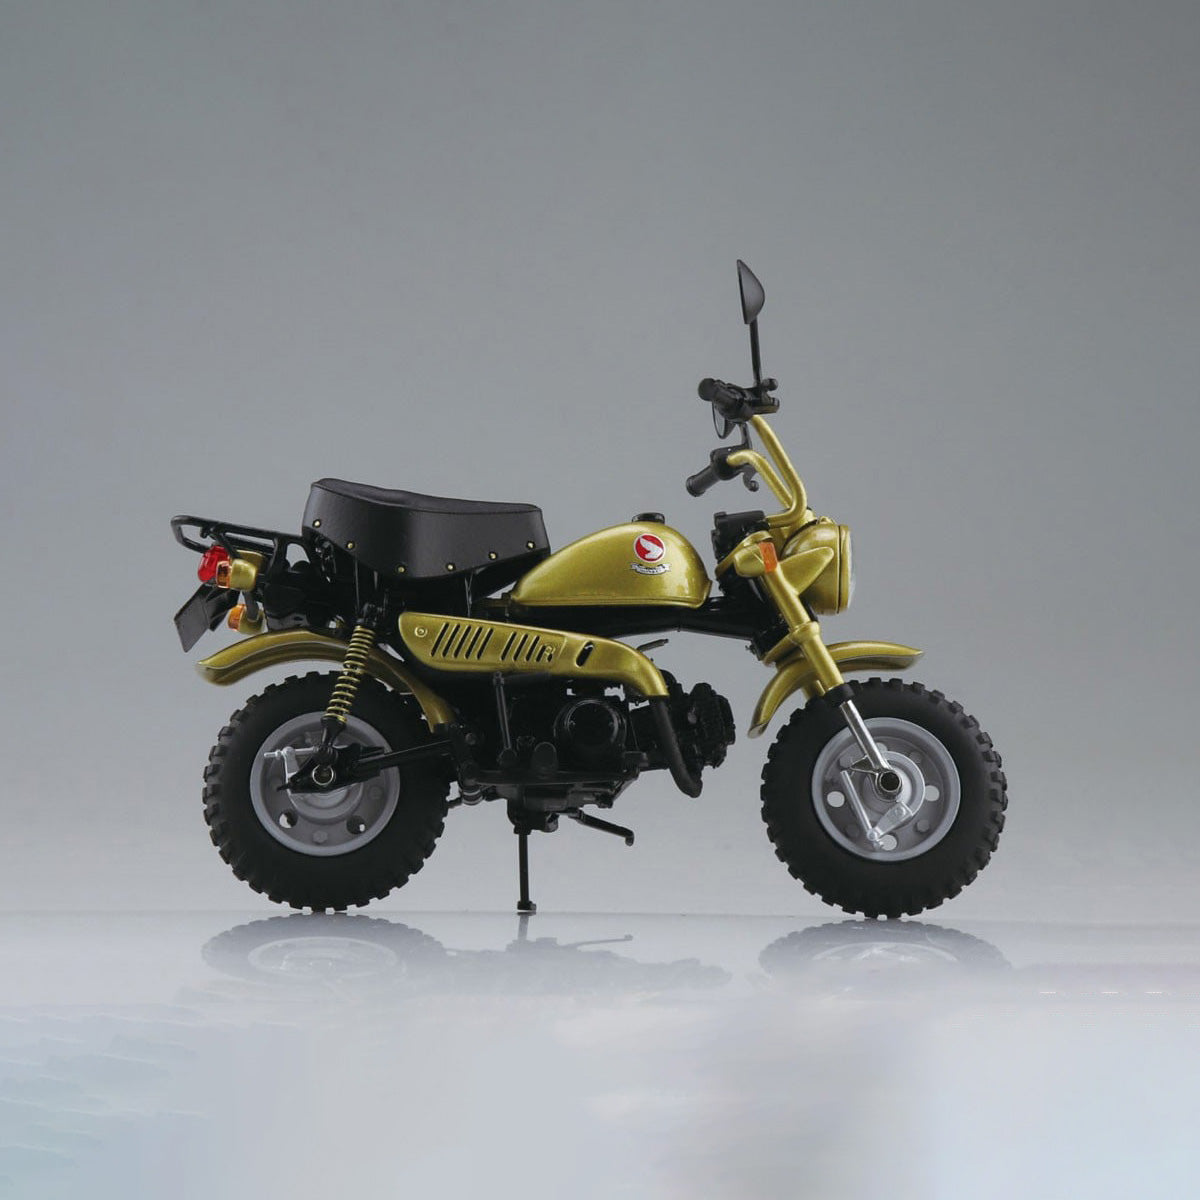 Aoshima - Diecast Motorcycle - Honda Monkey (Limited Monkey Gold) (1/12 Scale) - Marvelous Toys